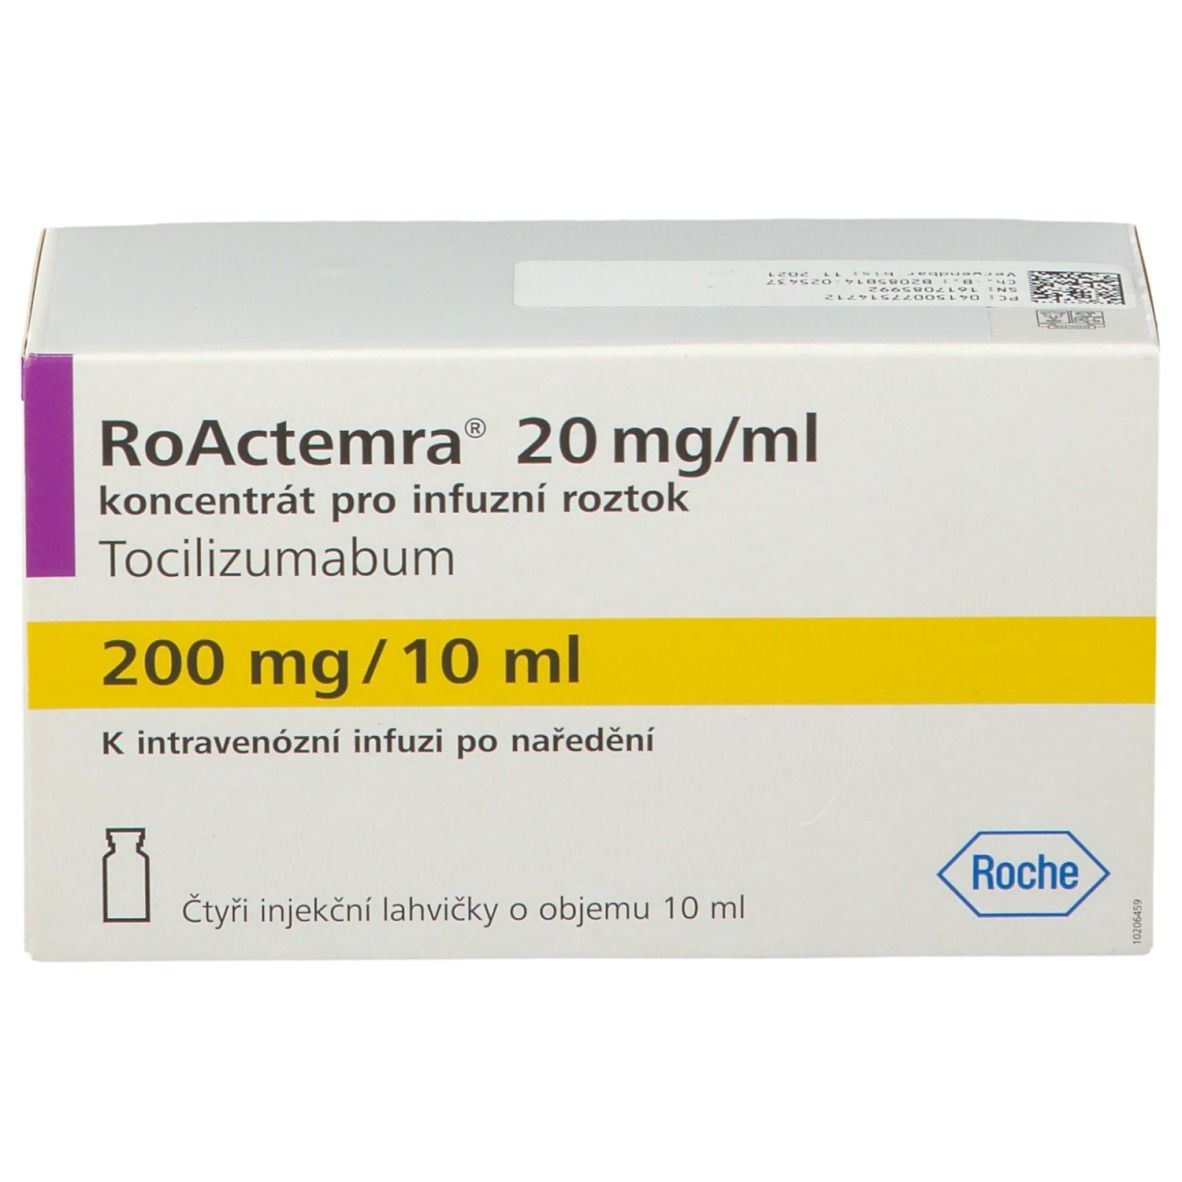 Roactemra 20 mg/ml 200 mg